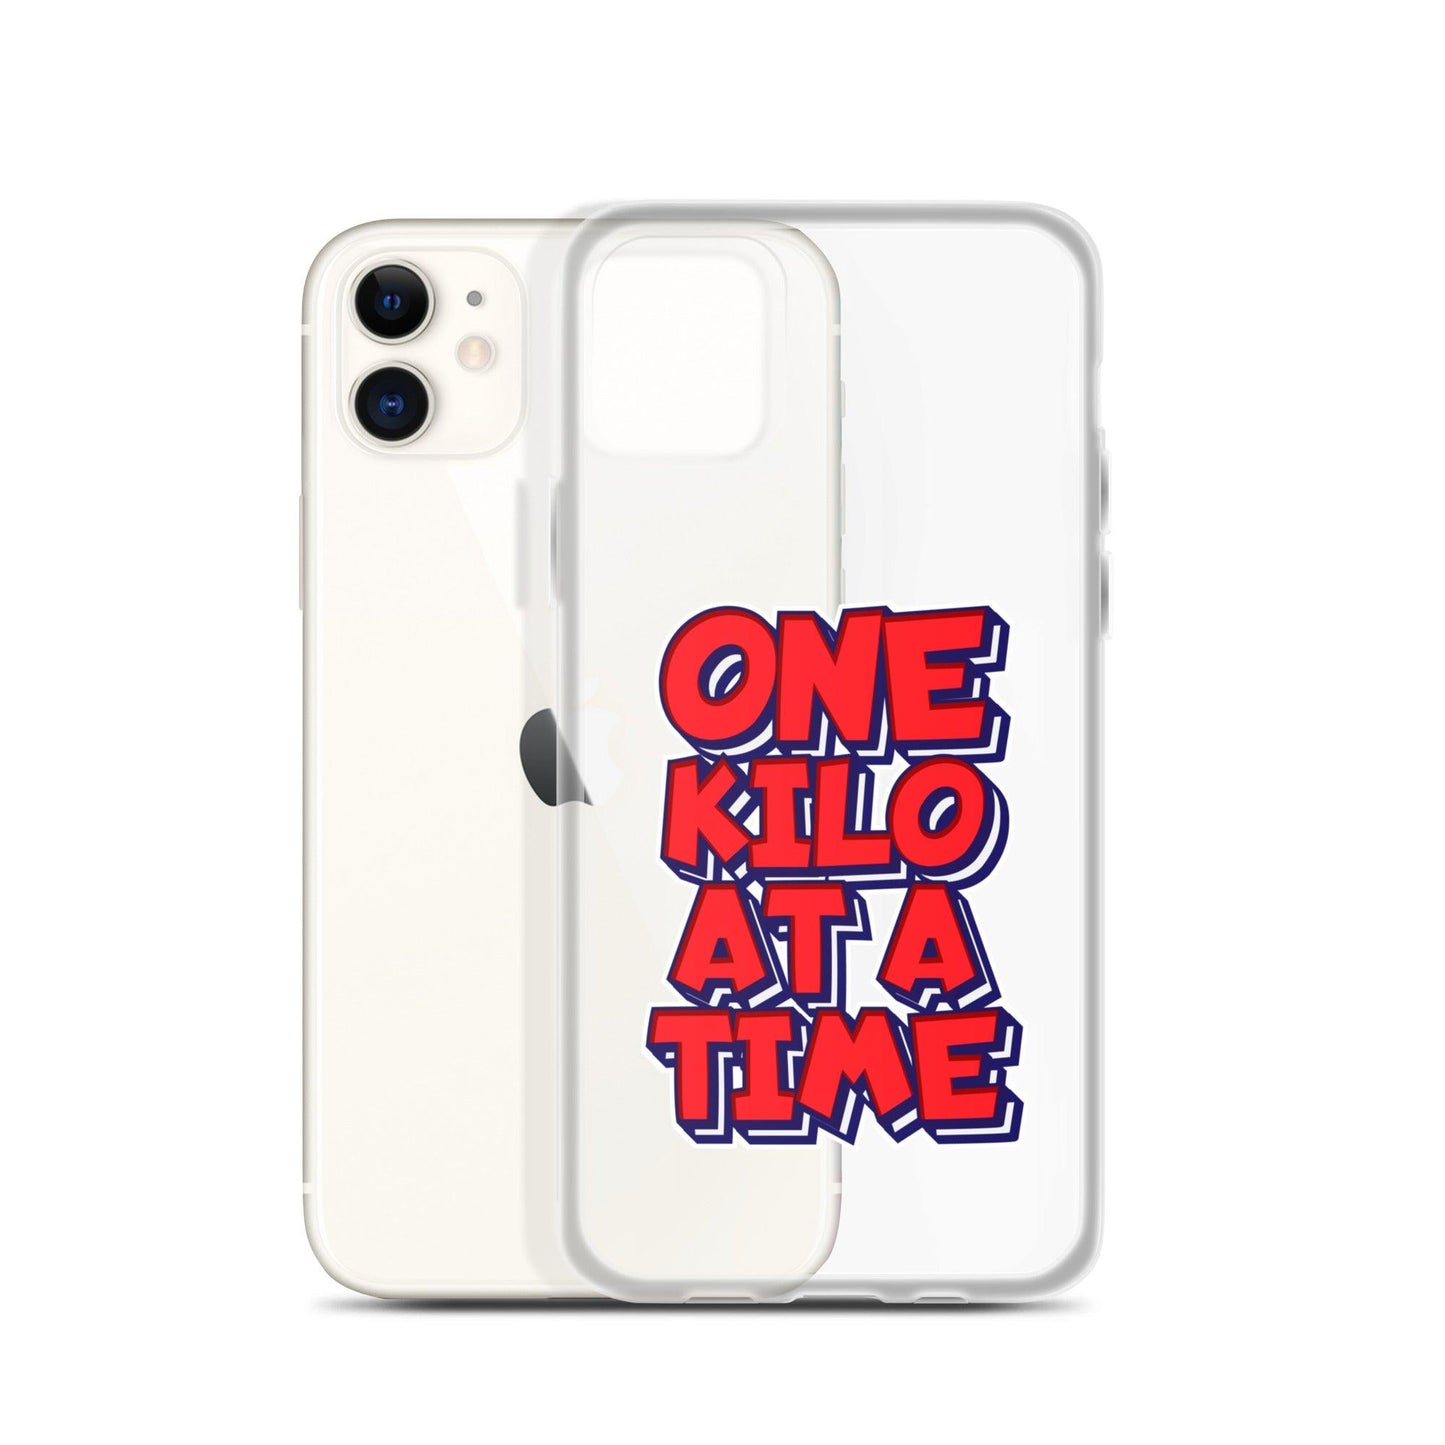 CJ Cummings “Essential” iPhone Case - Fan Arch